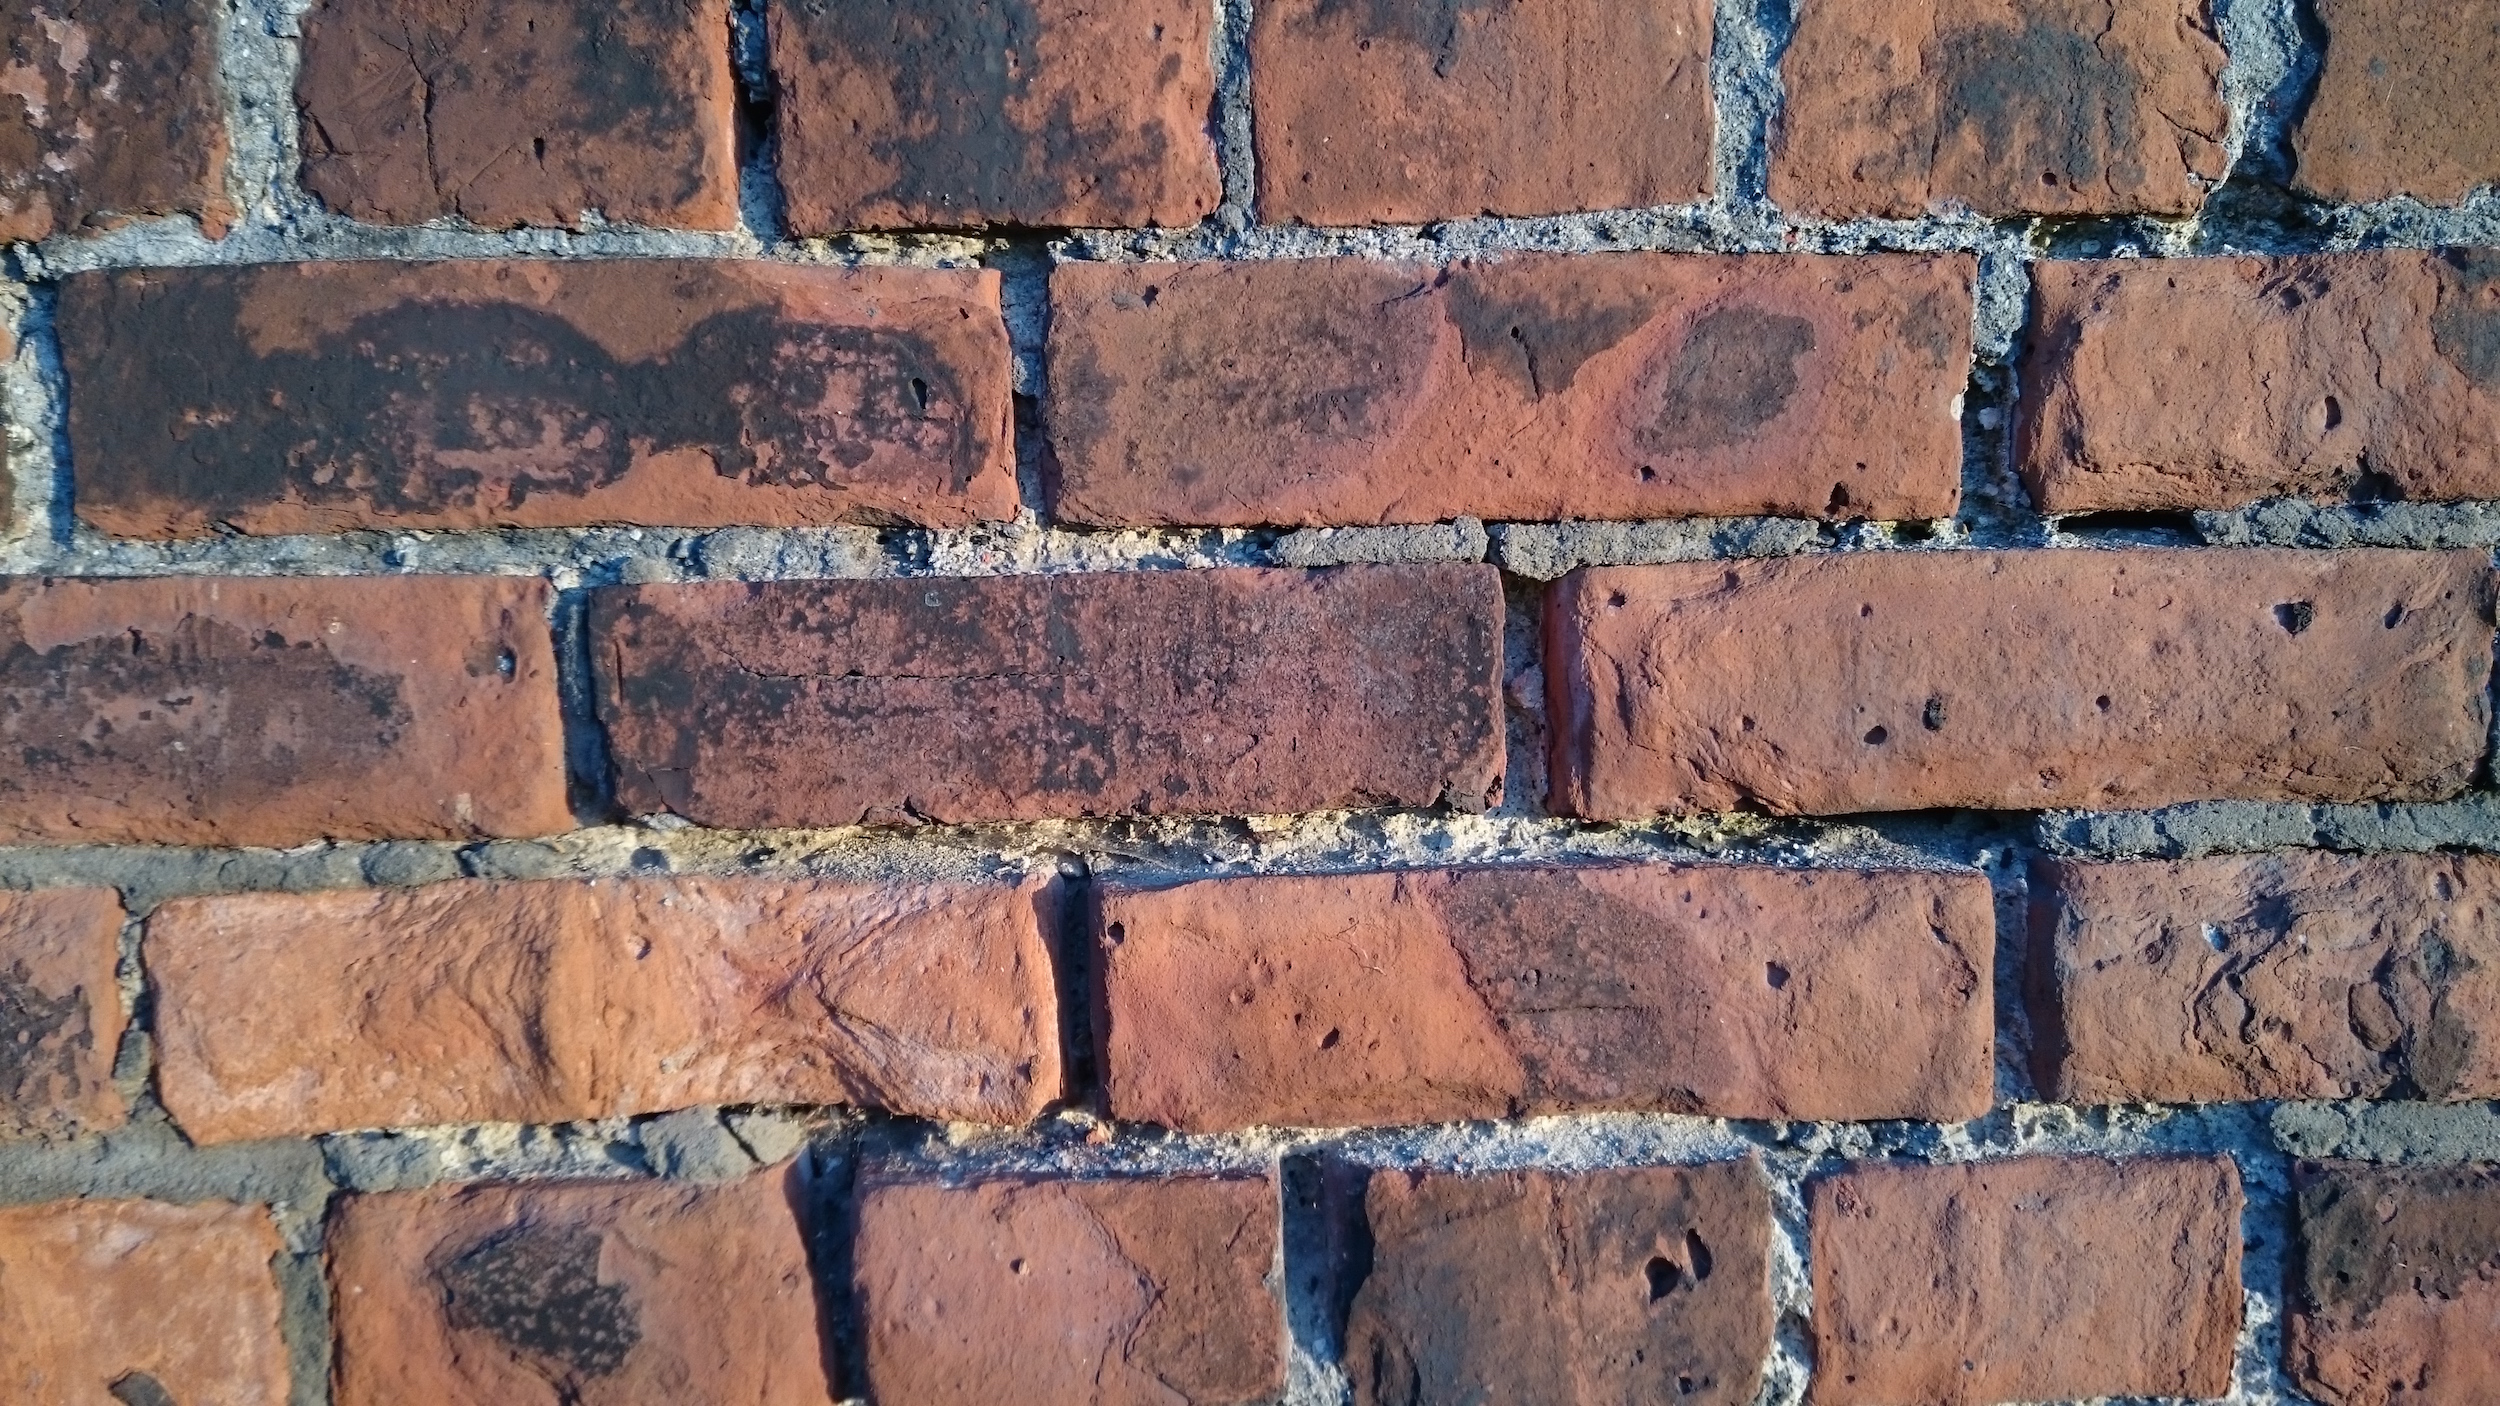 bricks